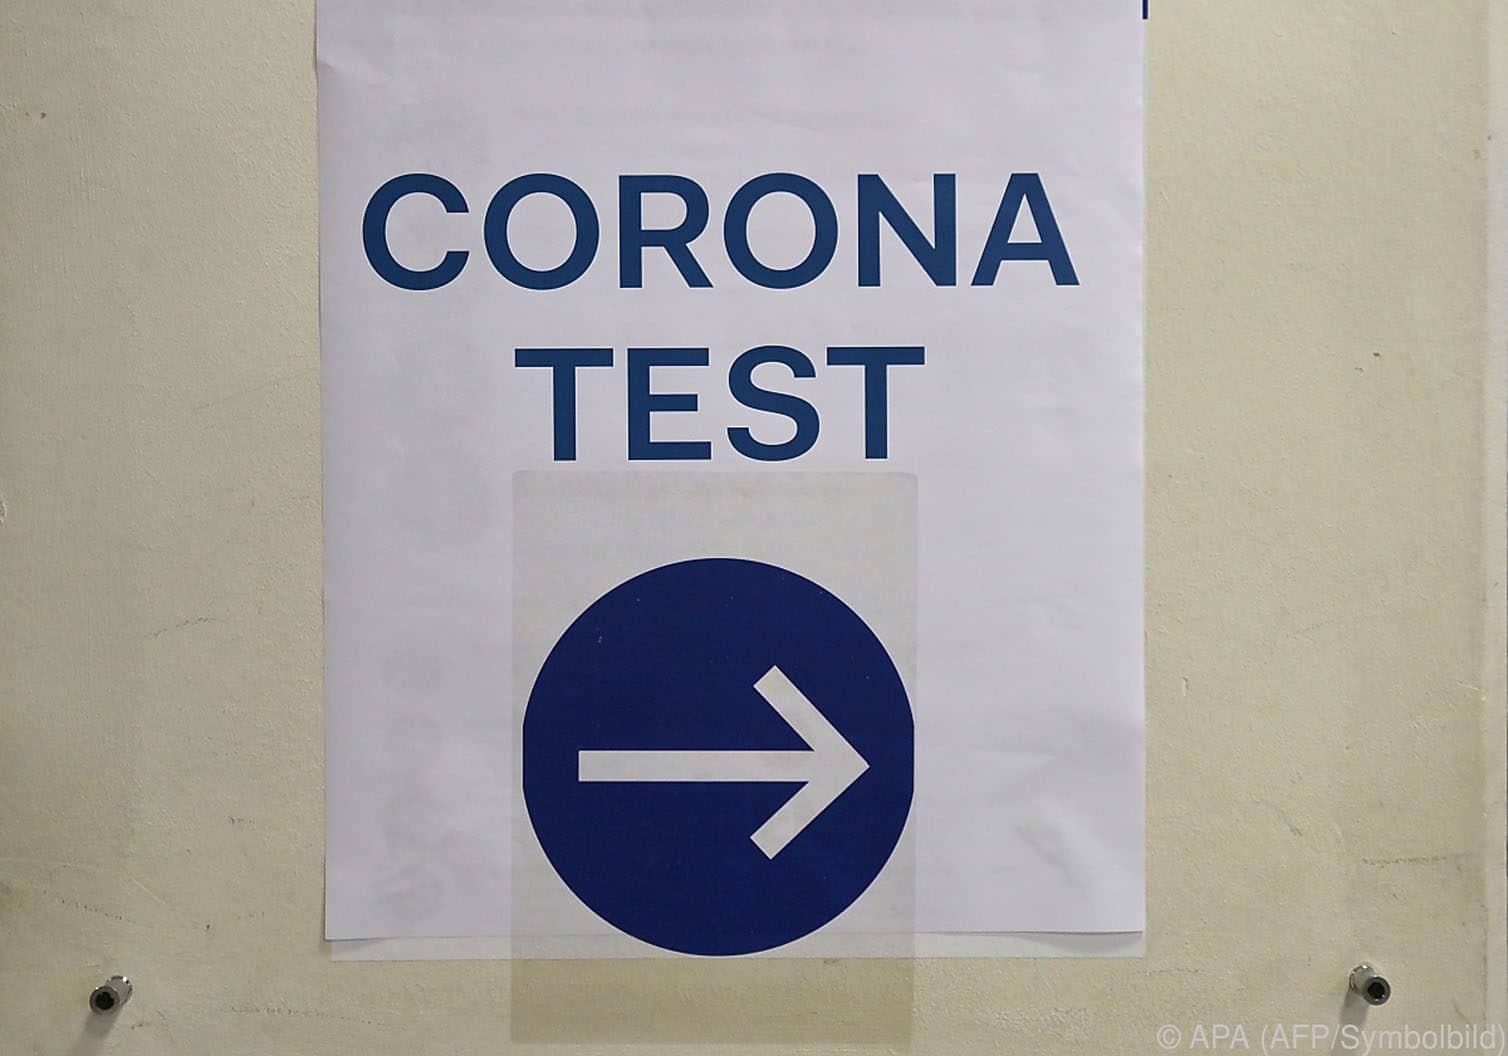 Heimreisenden Urlaubern nach Österreich drohen hohe Strafen bei nich erbrachten Corona Test